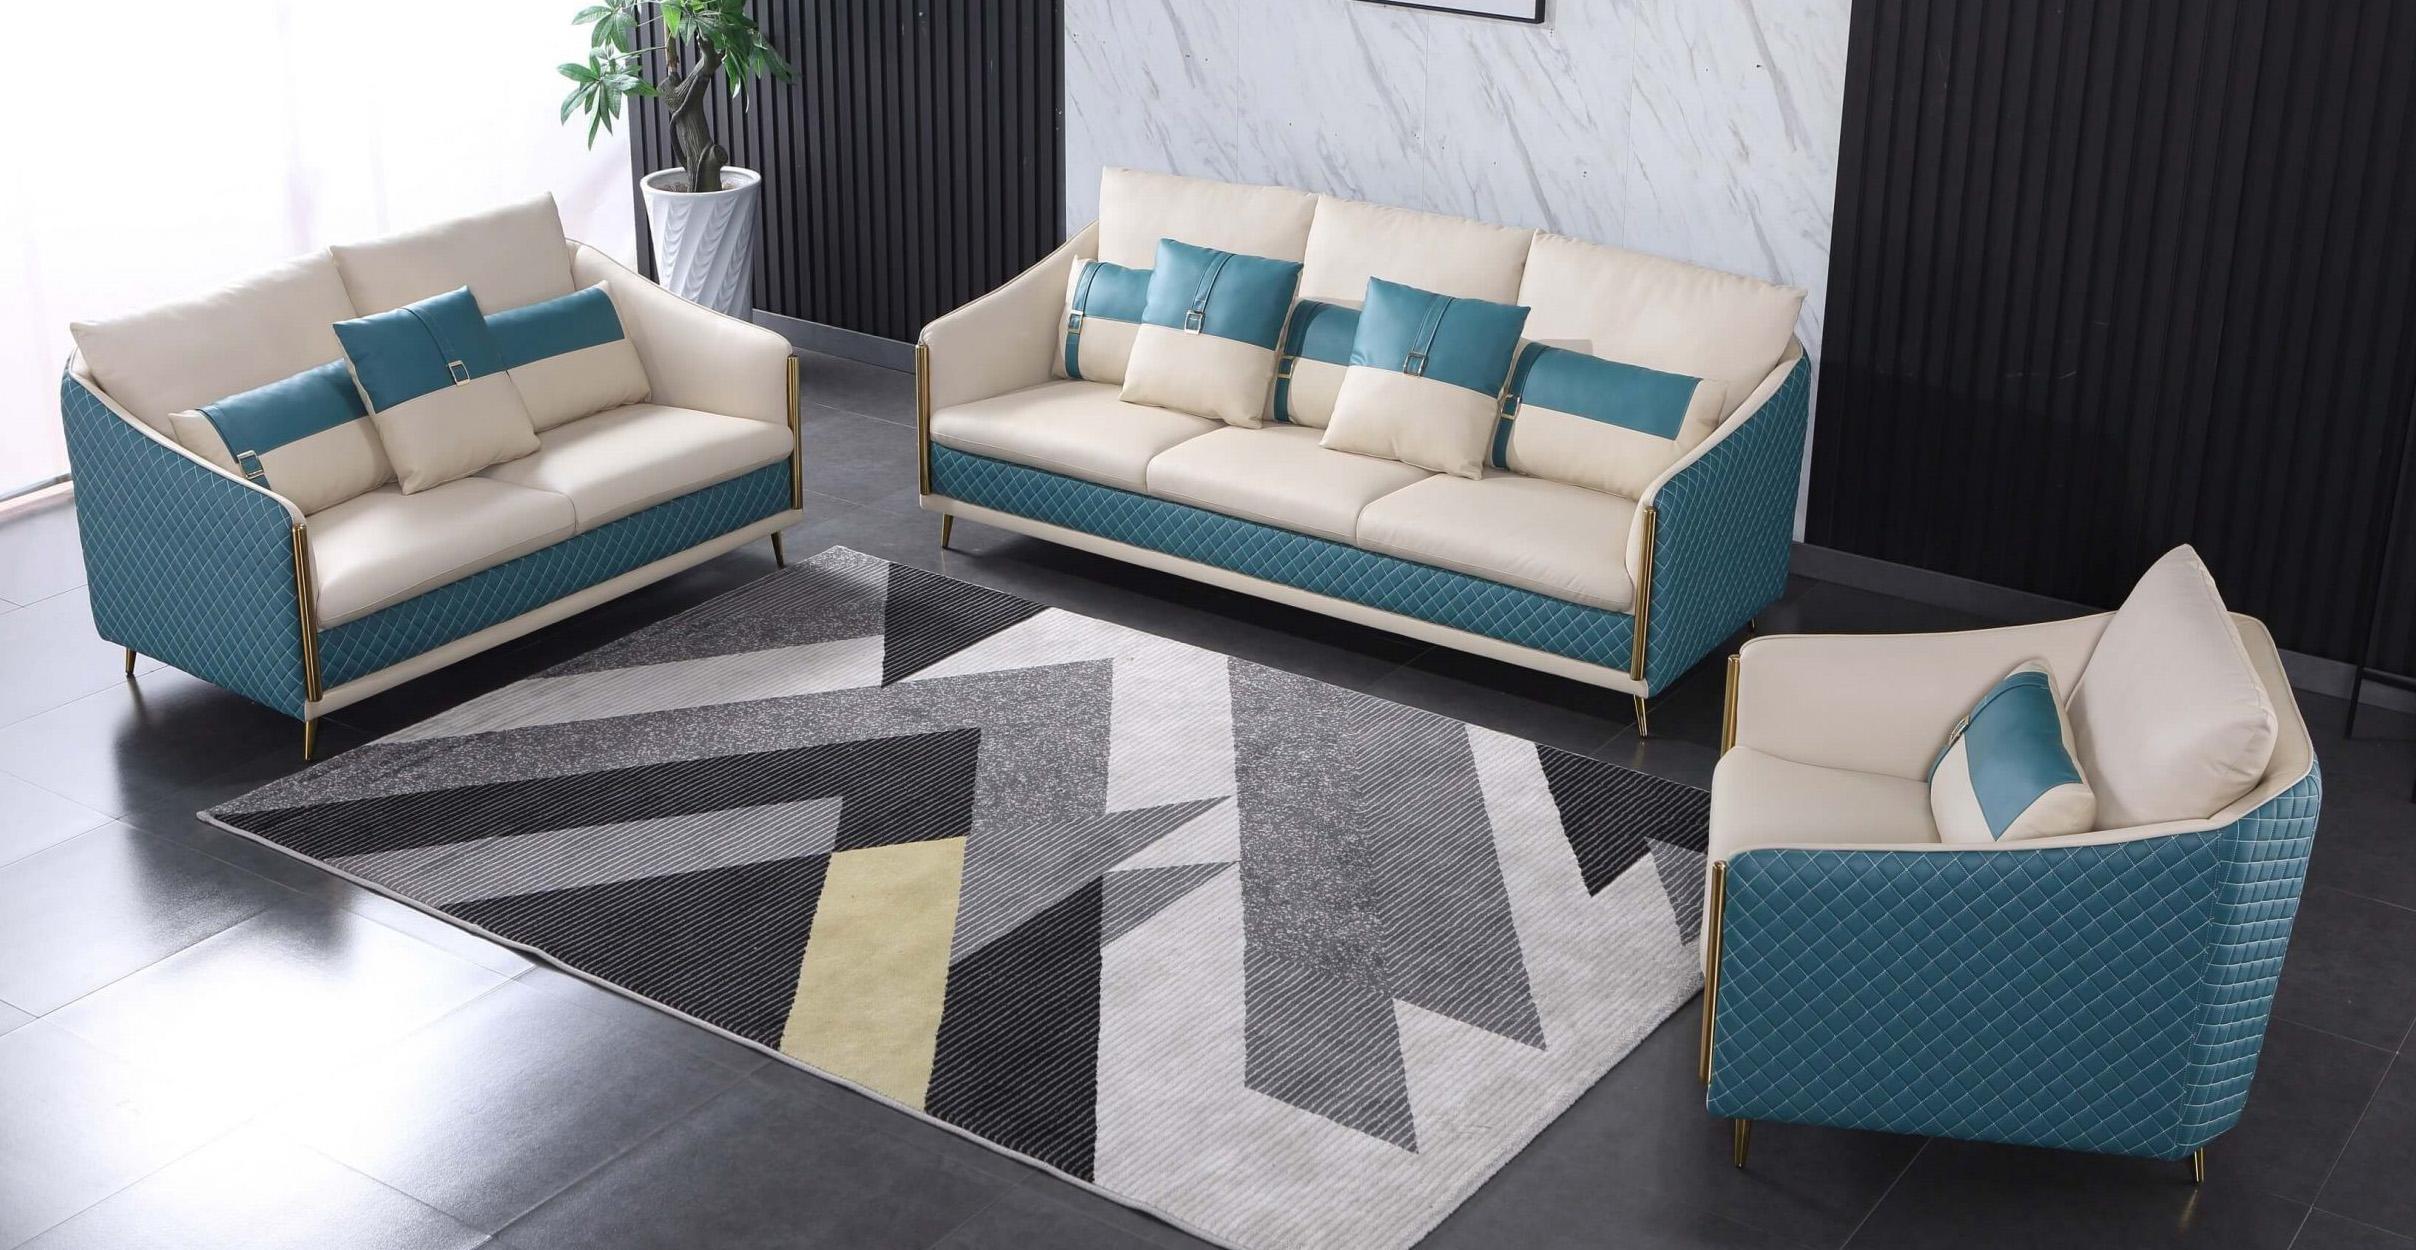 

    
Italian Leather Off White & Blue Sofa Set 3Pcs ICARO EUROPEAN FURNITURE Modern
